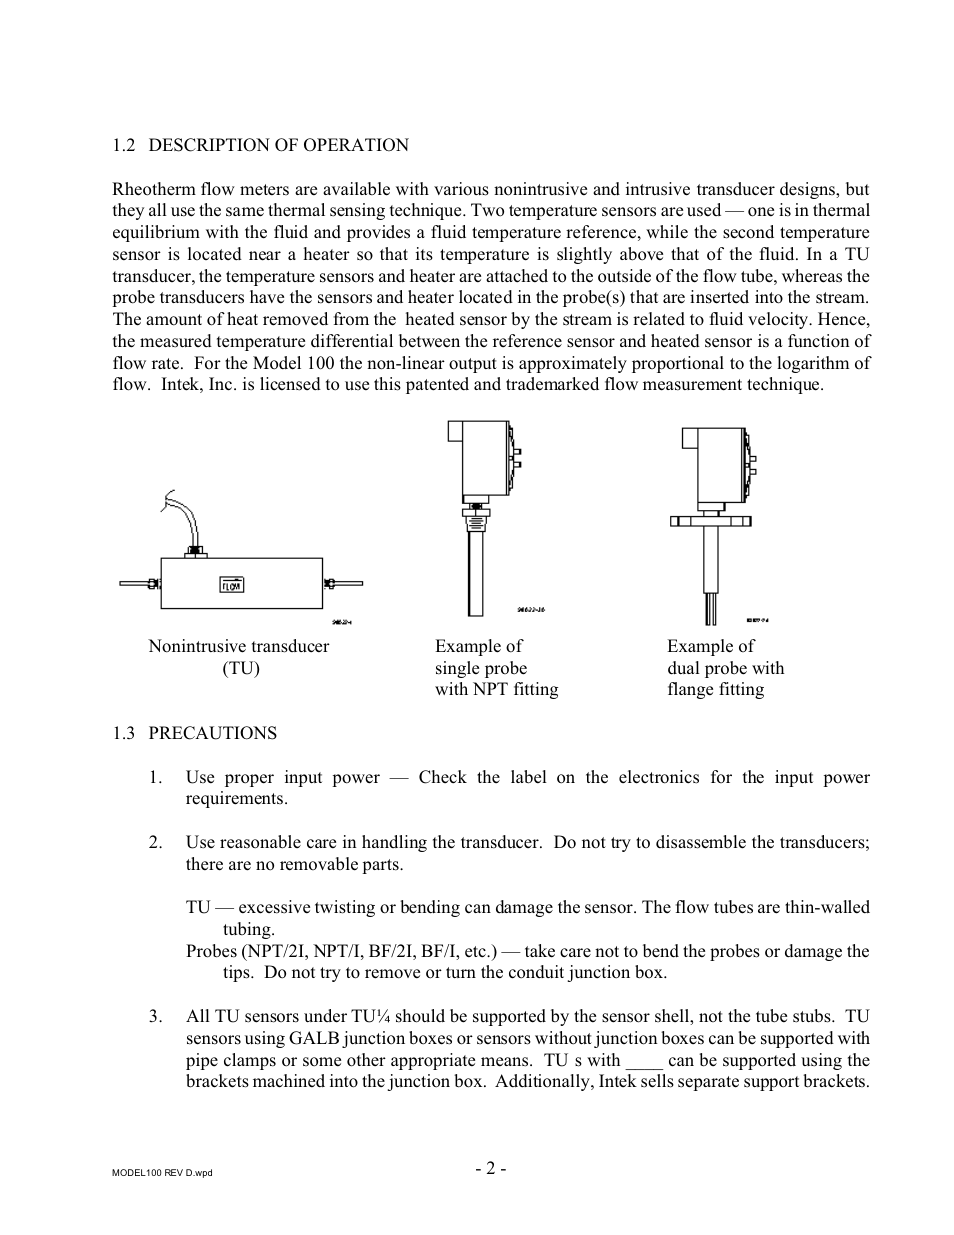 Intek 100 User Manual | Page 4 / 20